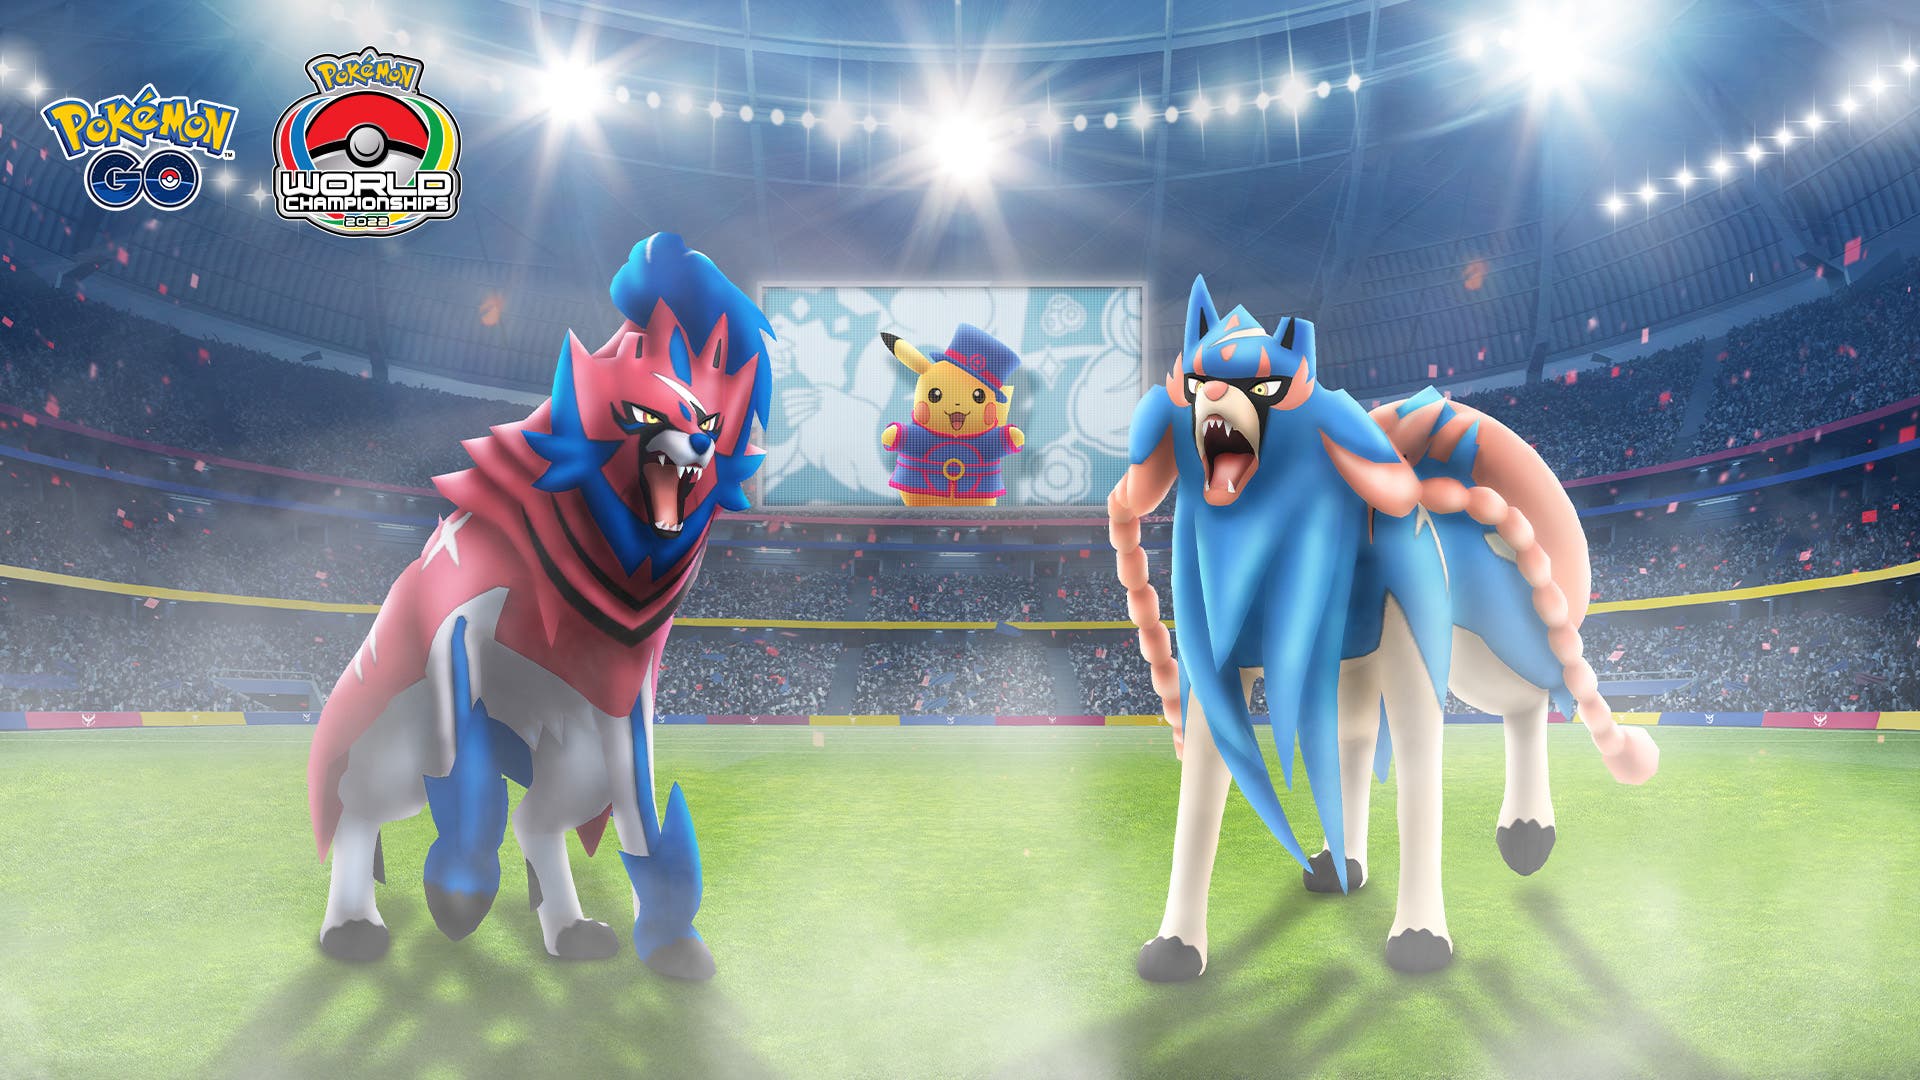 Pokémon GO detalla su evento de colaboración con el Campeonato Mundial Pokémon 2022